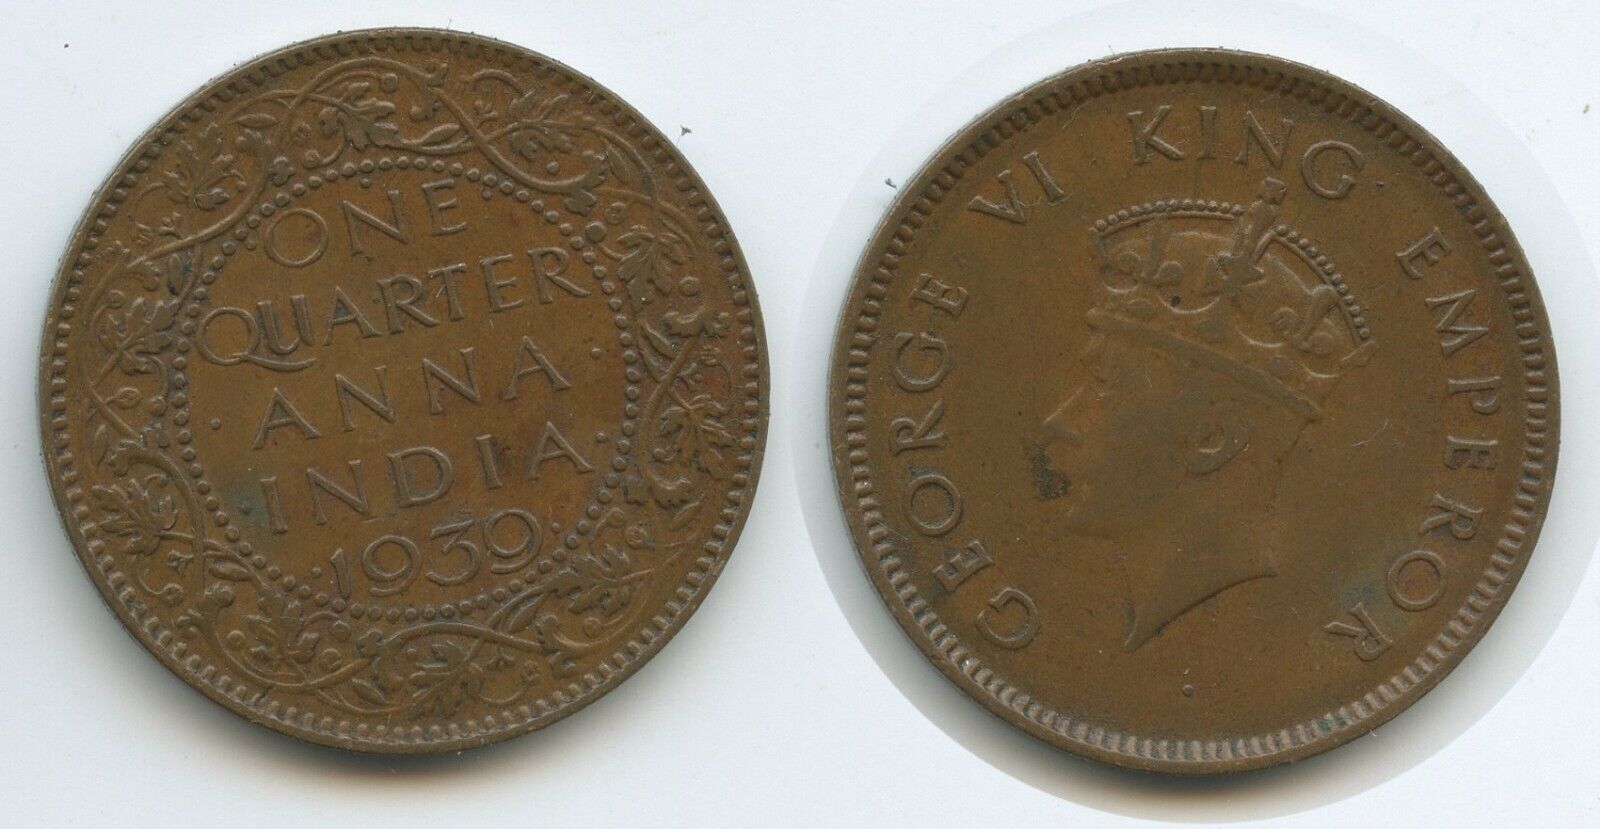 6622 Indien Britisch Quarter Anna 1939 King George VI. India British